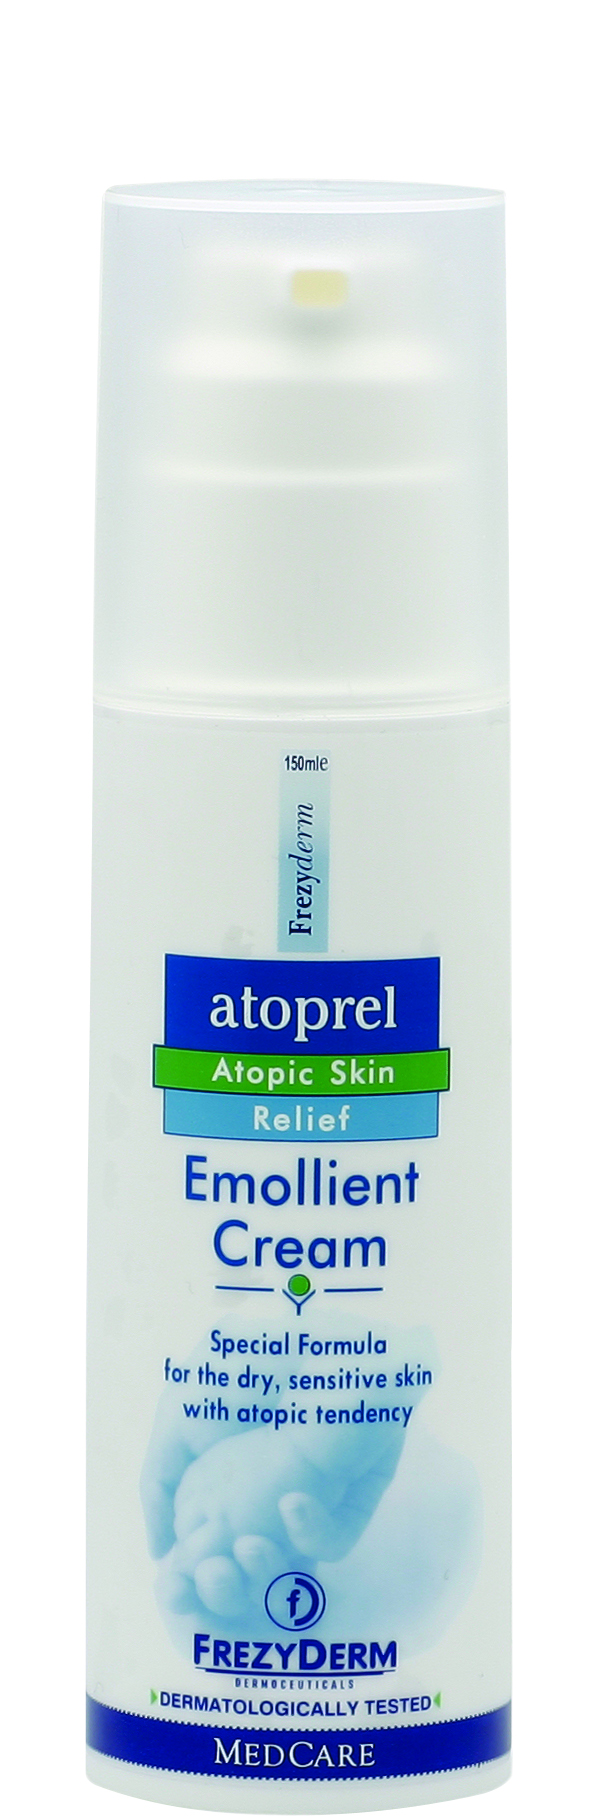 Atoprel Emollient Cream